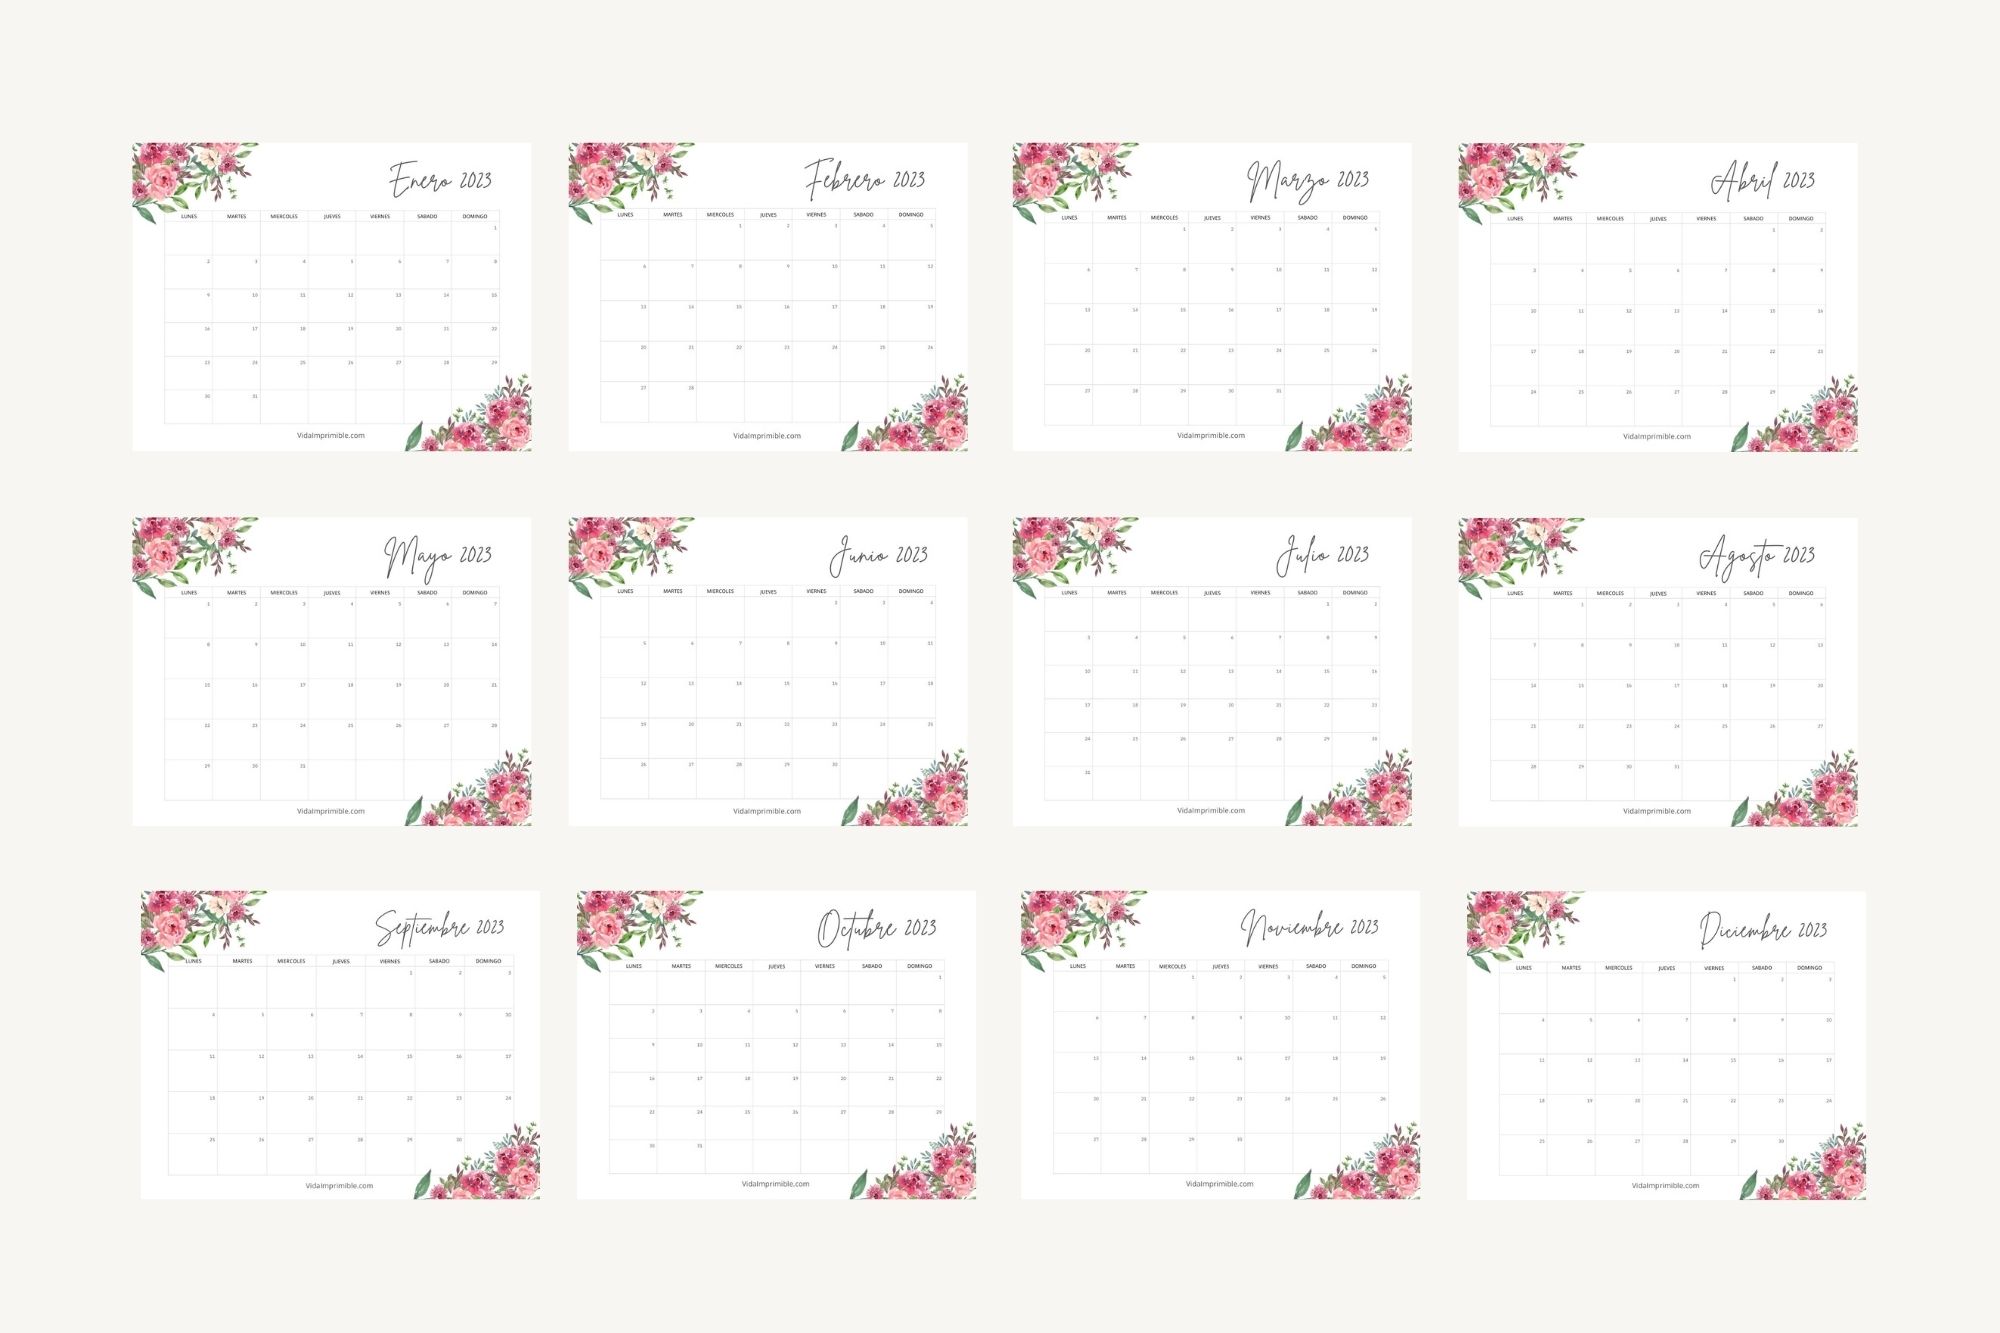 Calendarios Mayo 2023 Para Imprimir Gratis Vida Imprimible Reverasite